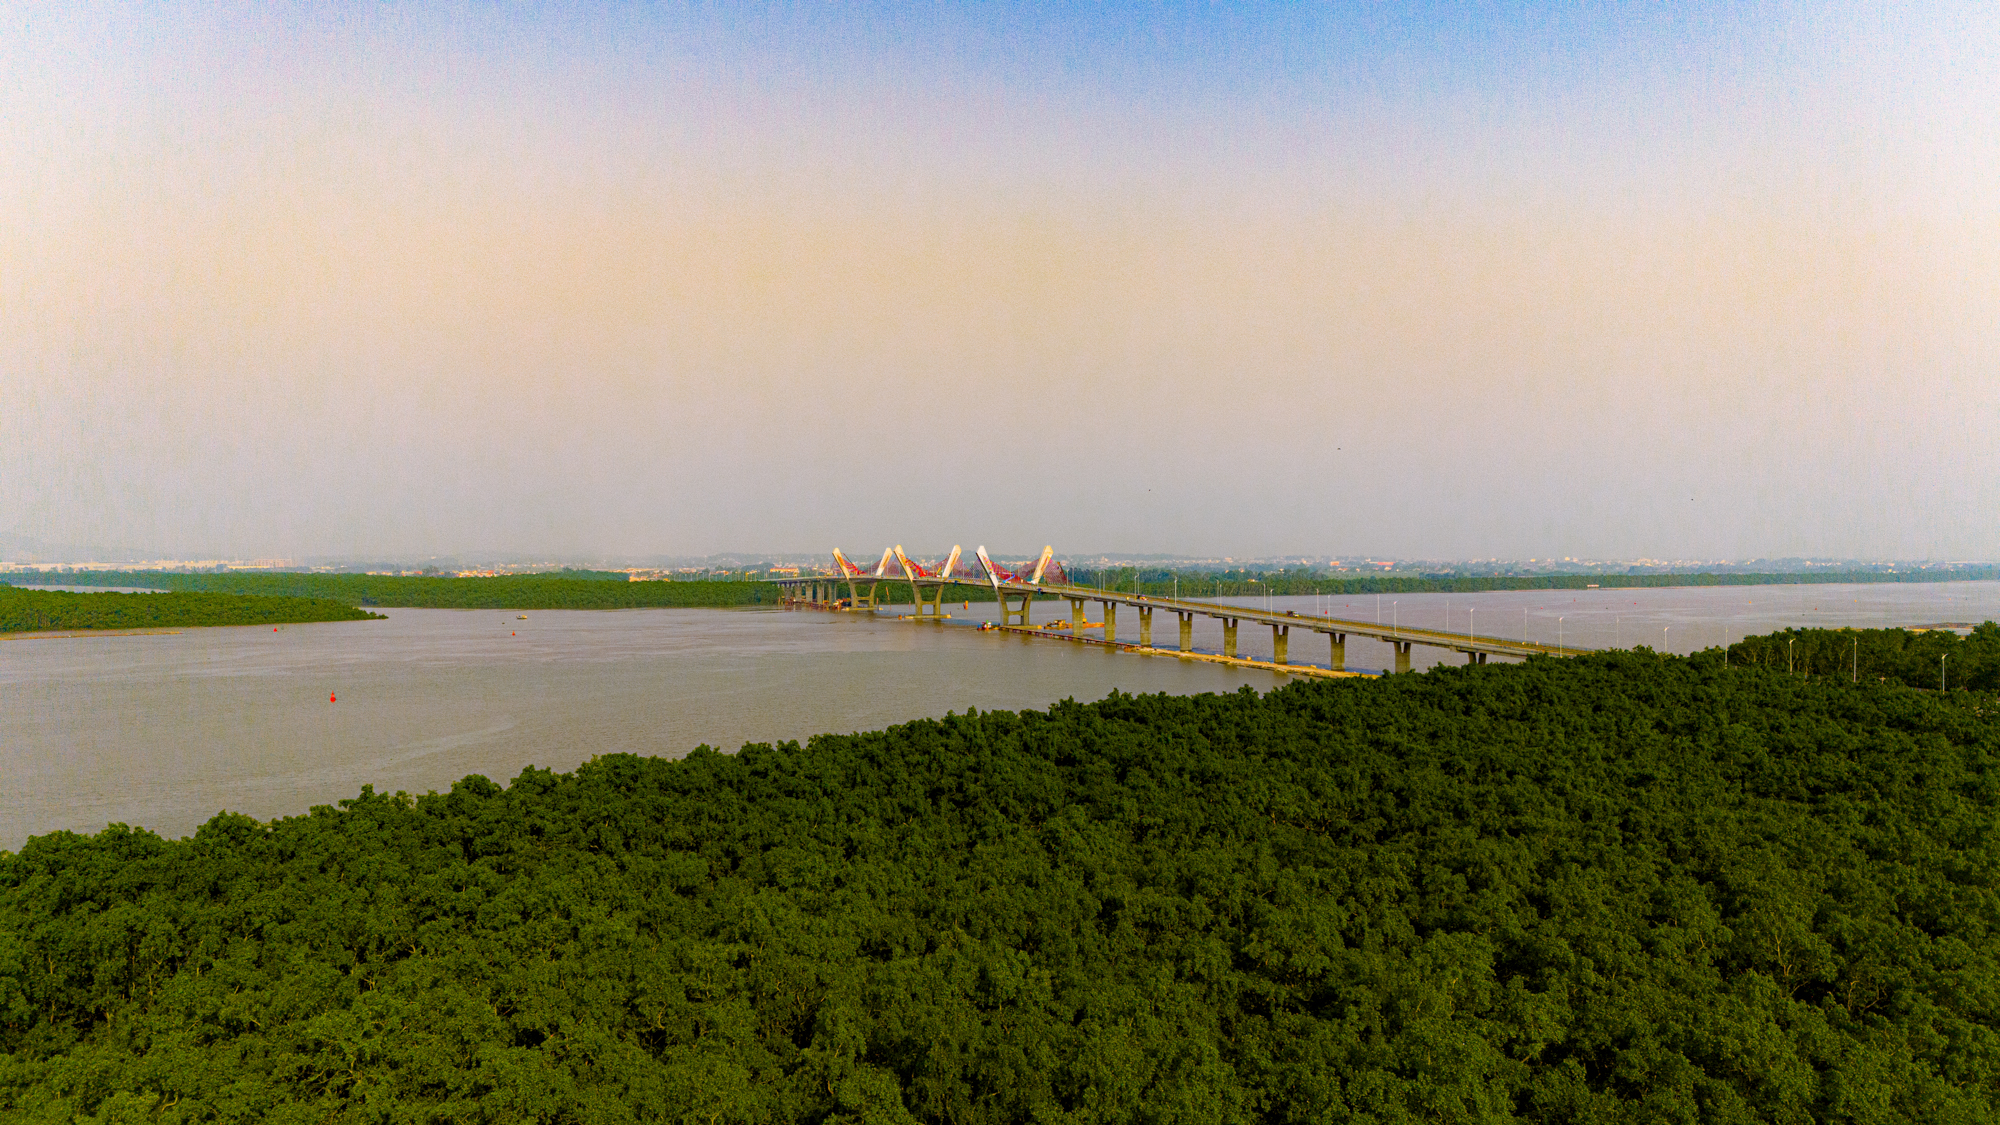 Toàn cảnh khu vực được xây cây cầu trị giá 2.000 tỷ sắp hoàn thành, kết nối Hải Phòng và Quảng Ninh, đưa tuyến phà sông lớn nhất miền Bắc về “nghỉ hưu”.- Ảnh 11.